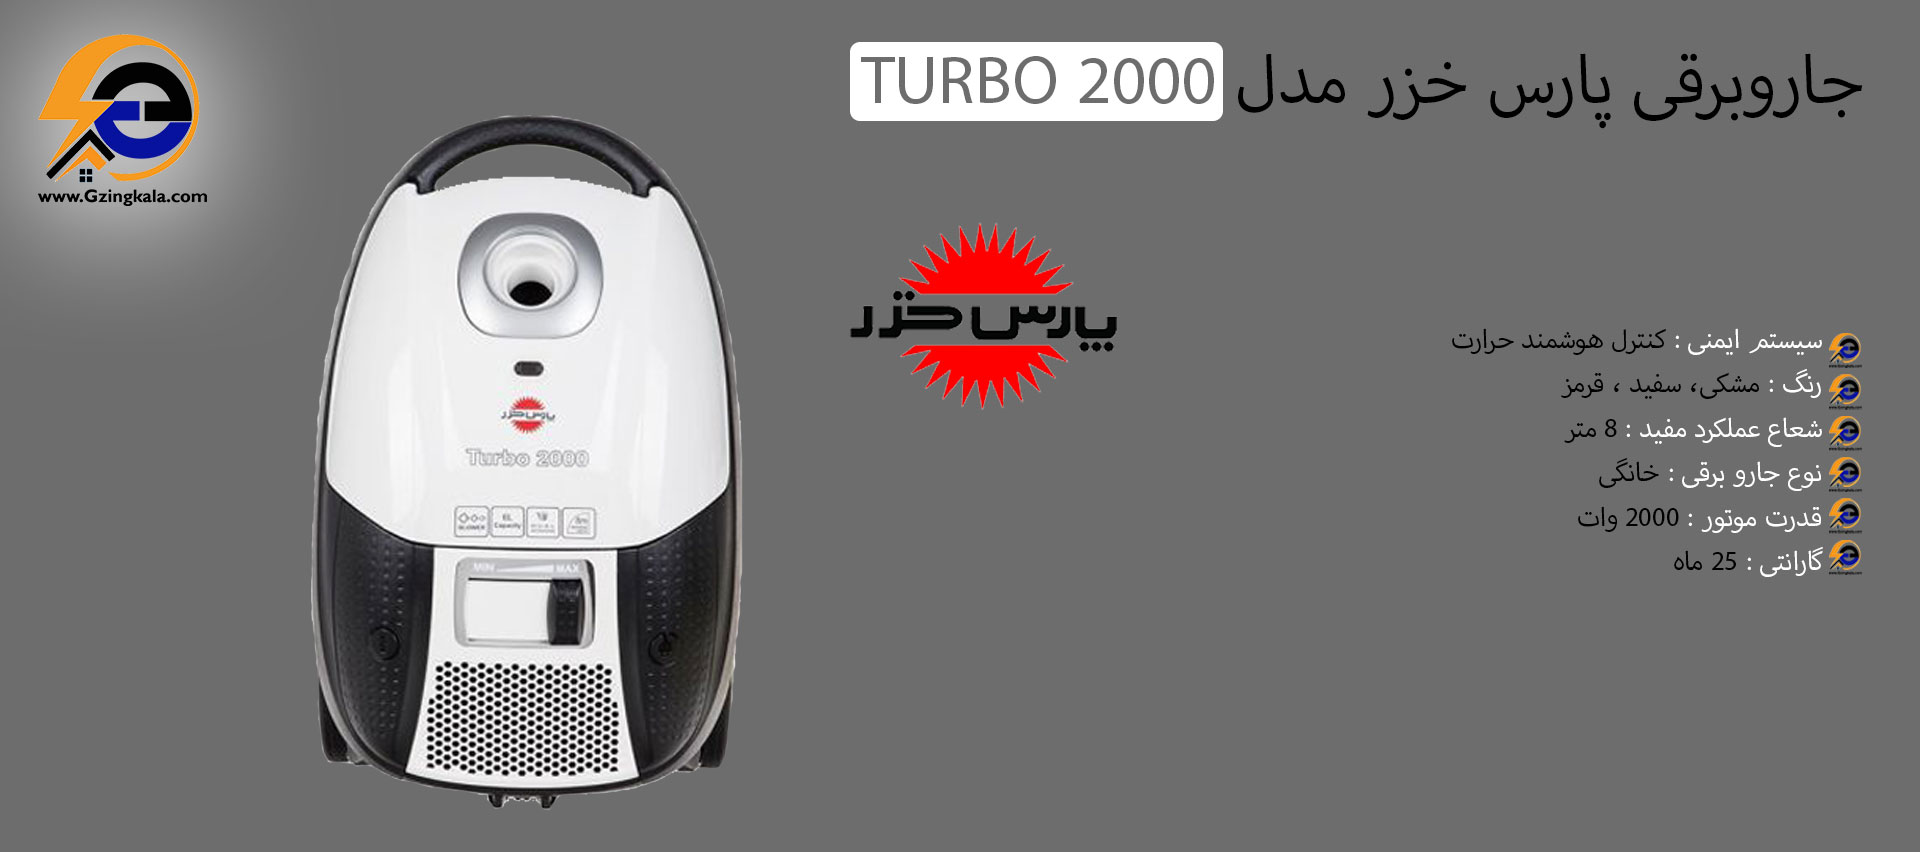 جاروبرقی پارس خزر مدل 2000 TURBO